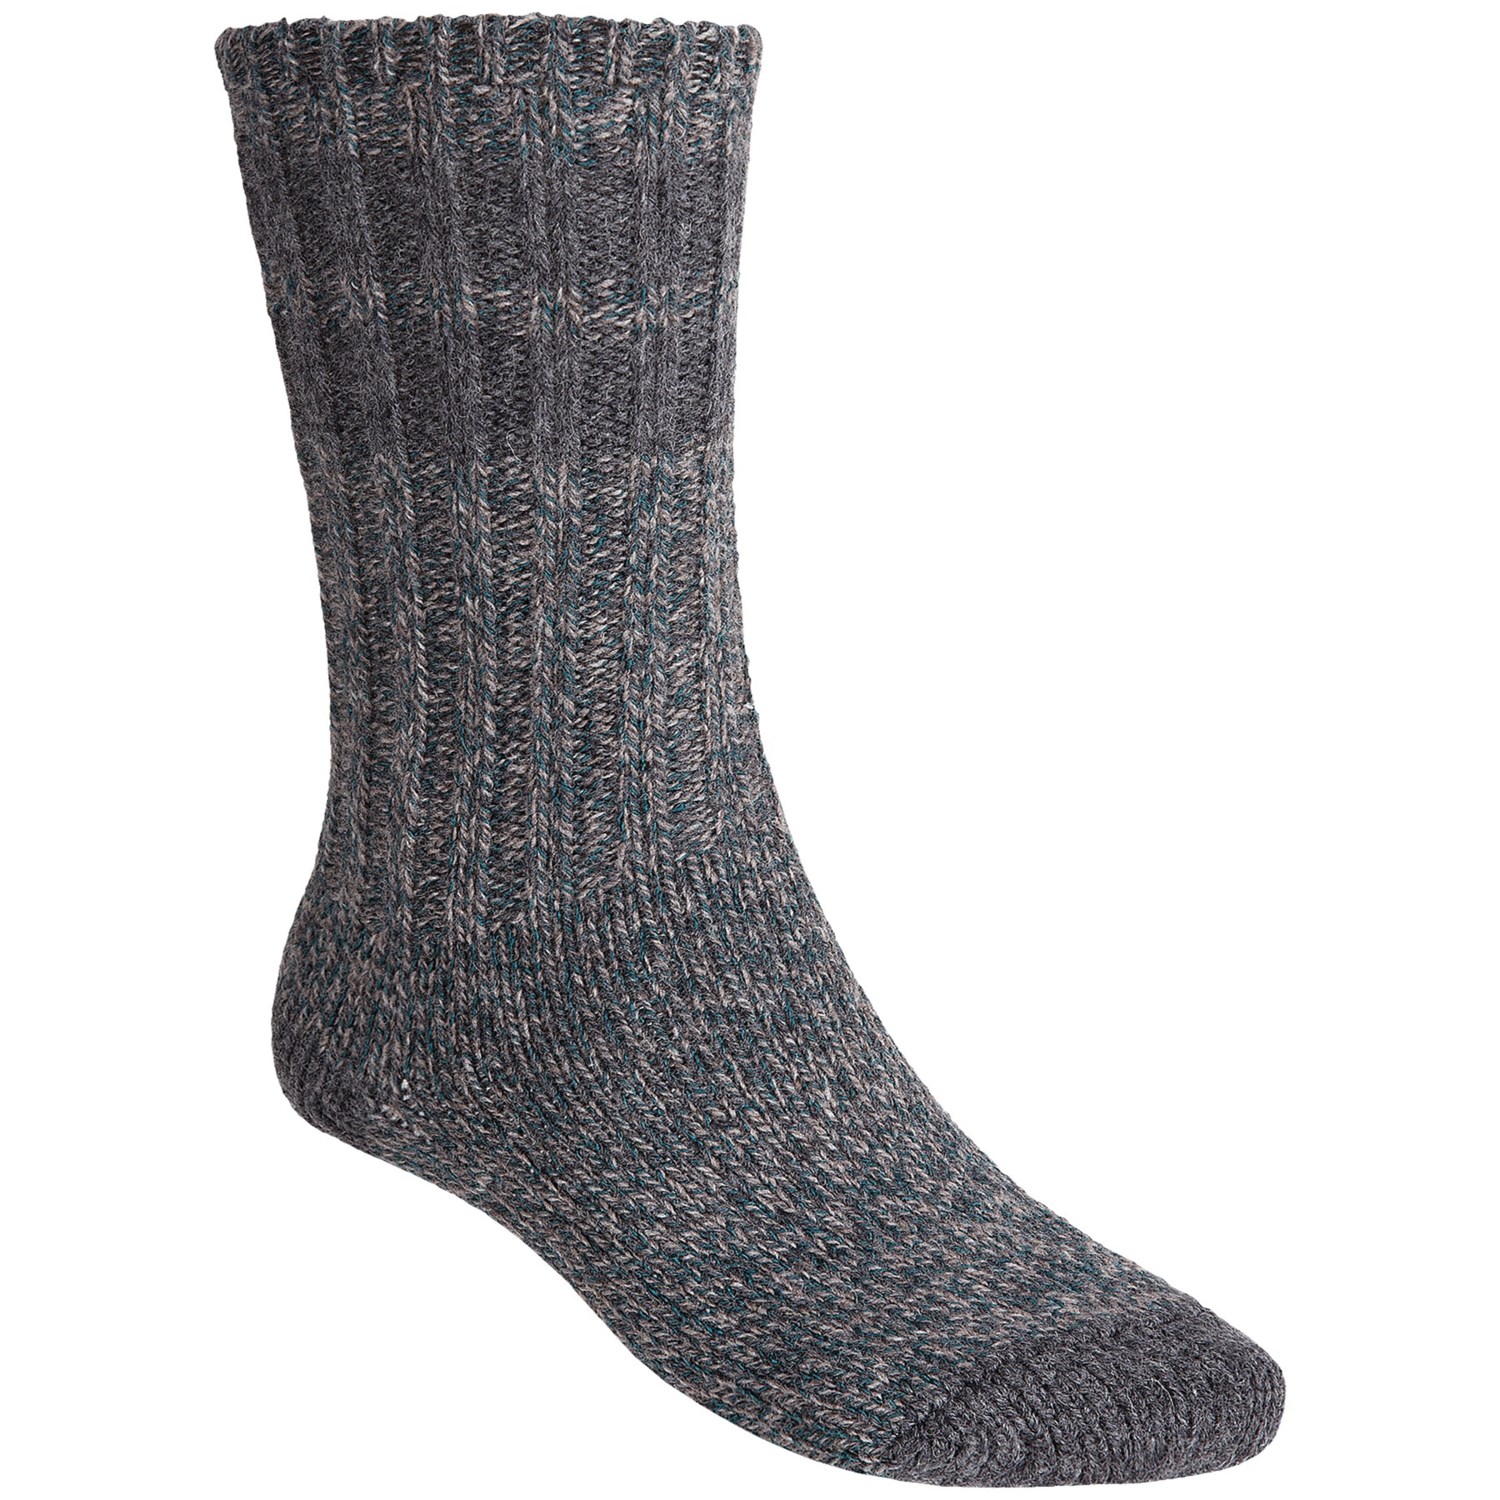 Merrell Tufnell Ragg Crew Socks (For Men) 7380C - Save 36%